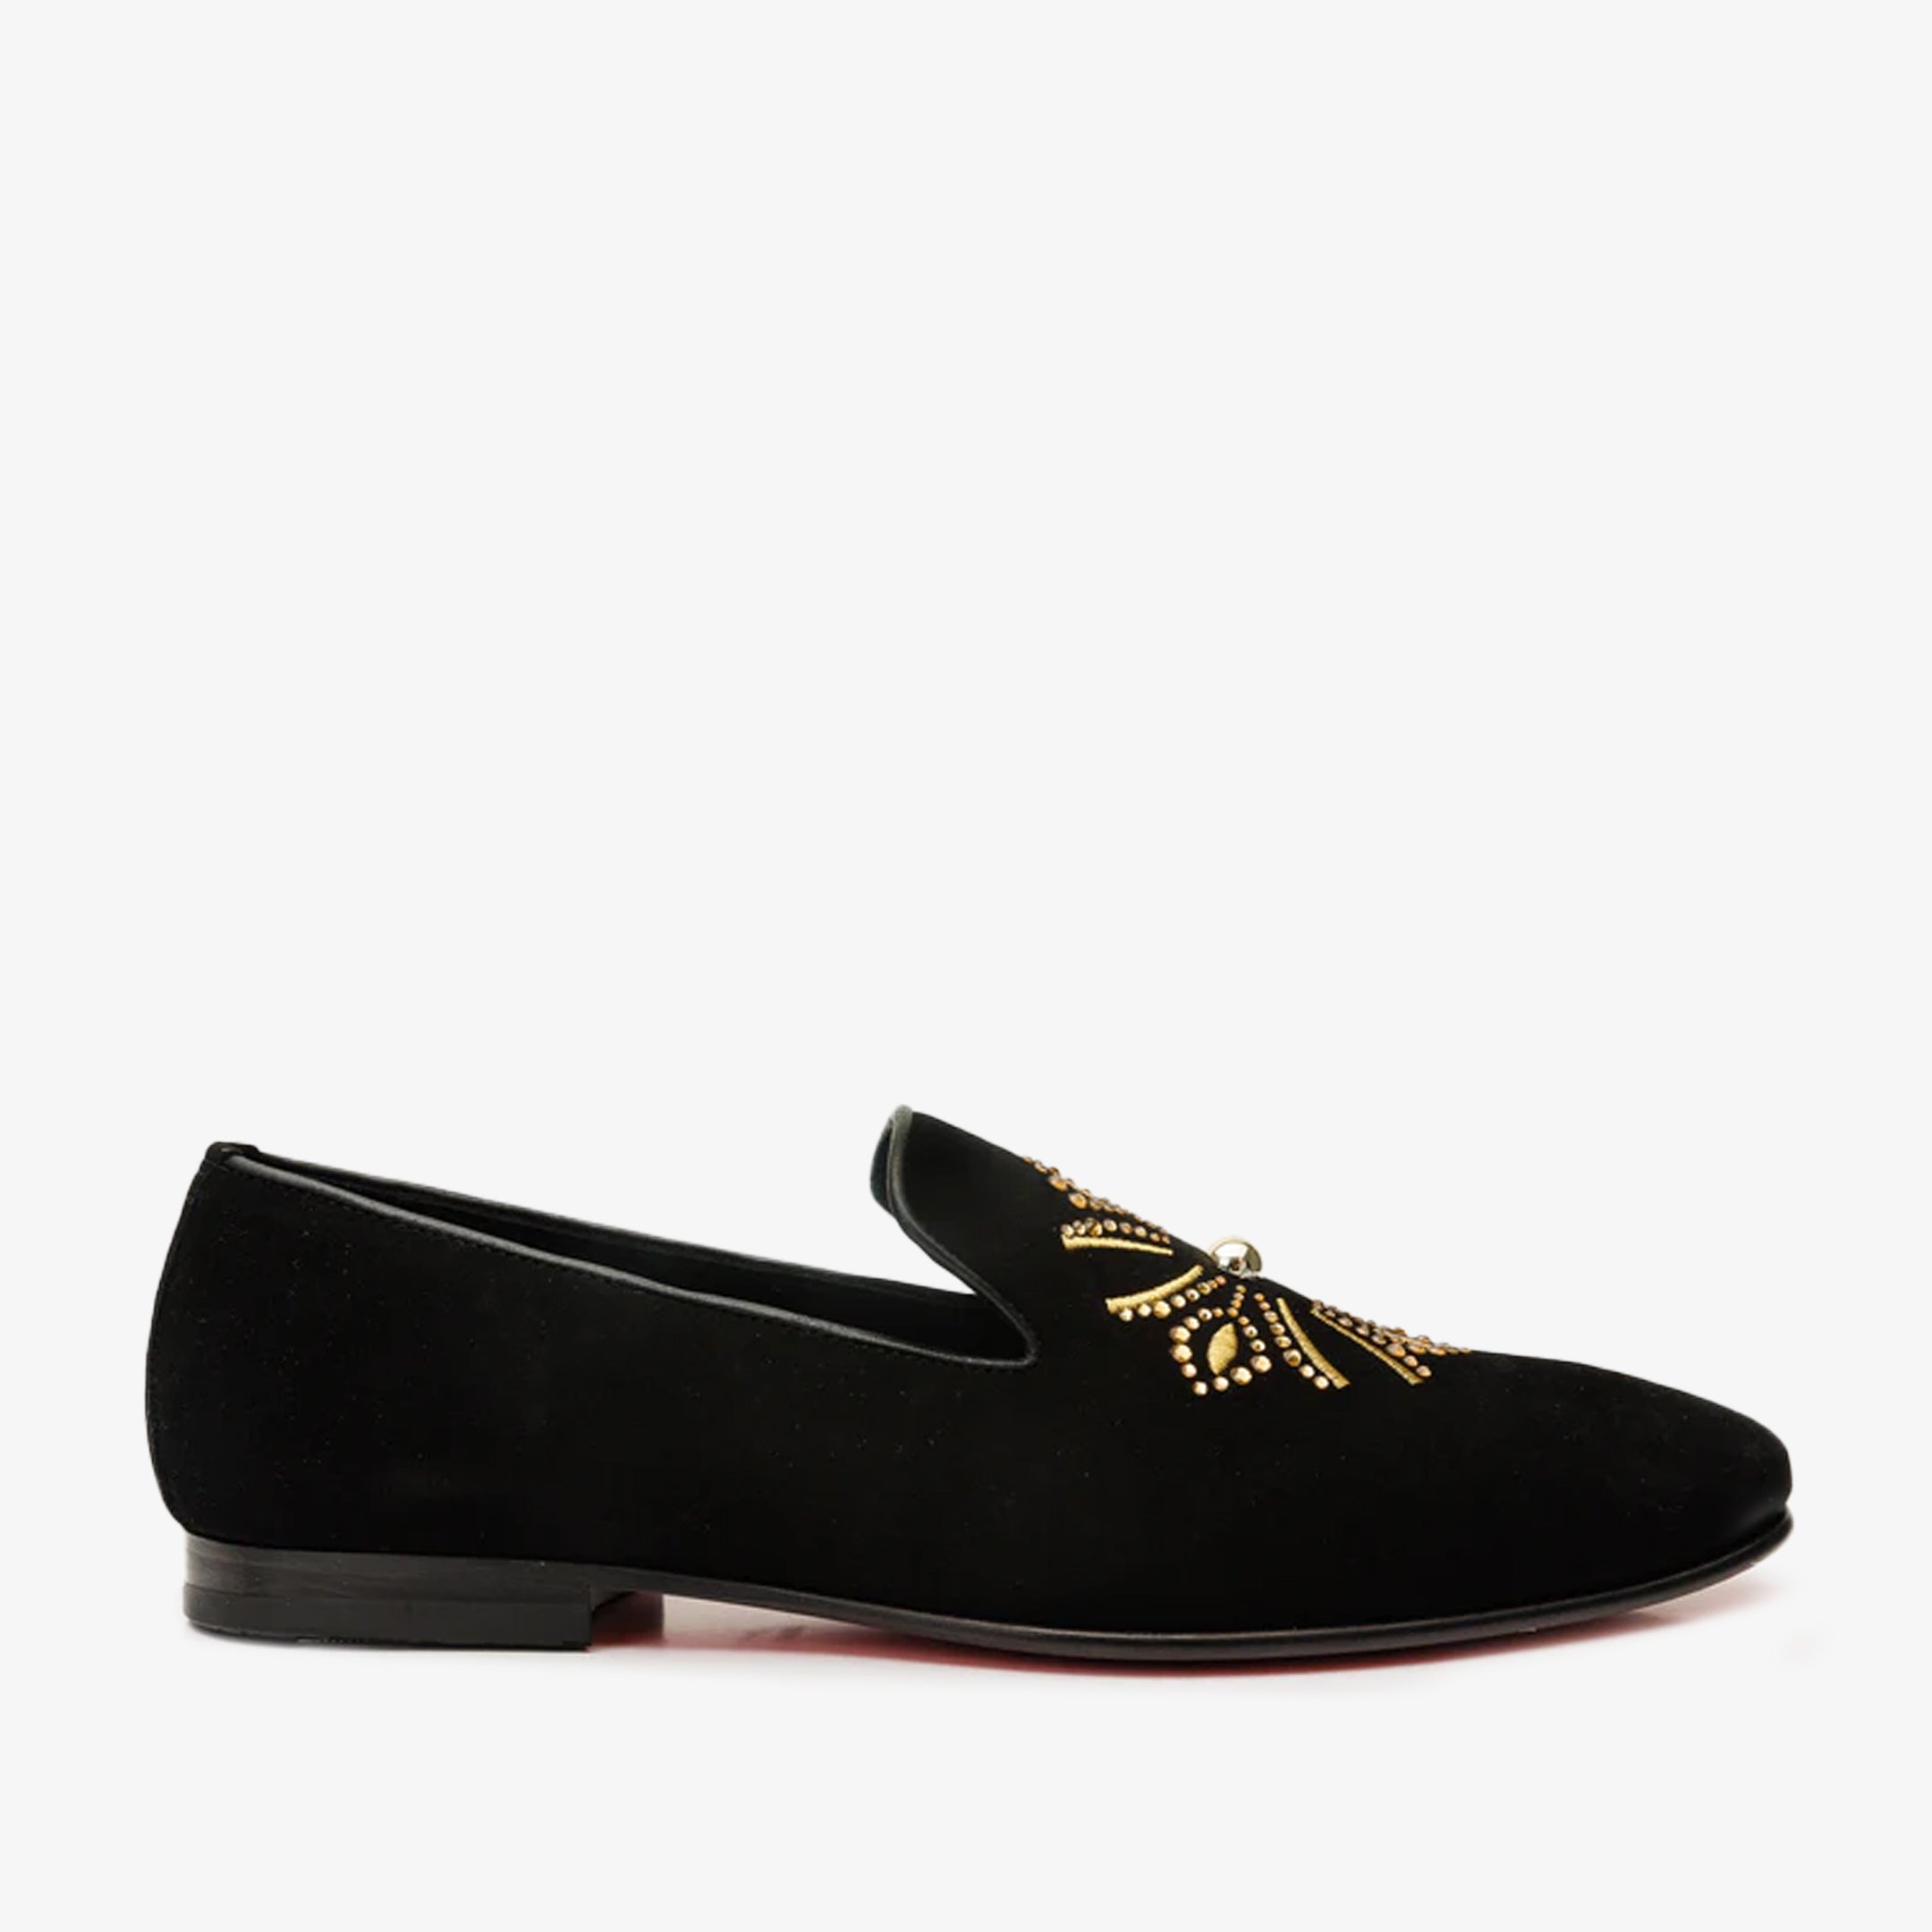 The Lazio Shoe Black Suede Slip-on Loafer Men Shoe – Vinci Leather Shoes